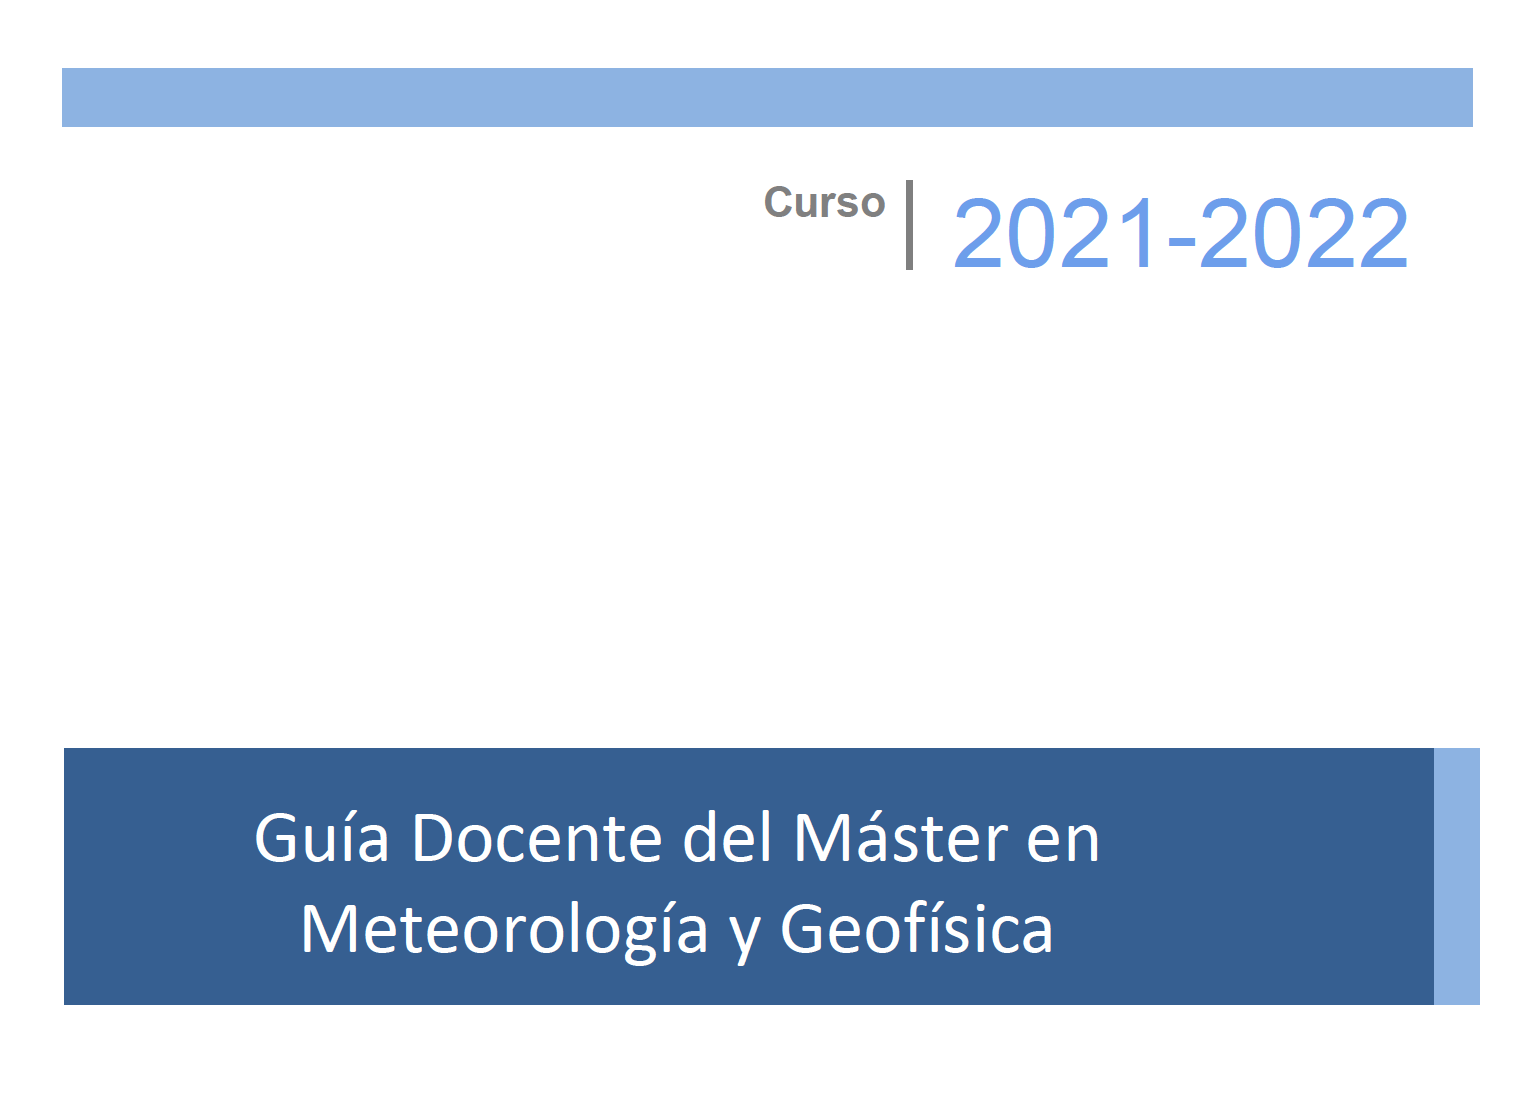 Nueva Guía Docente del Curso 2021-2022